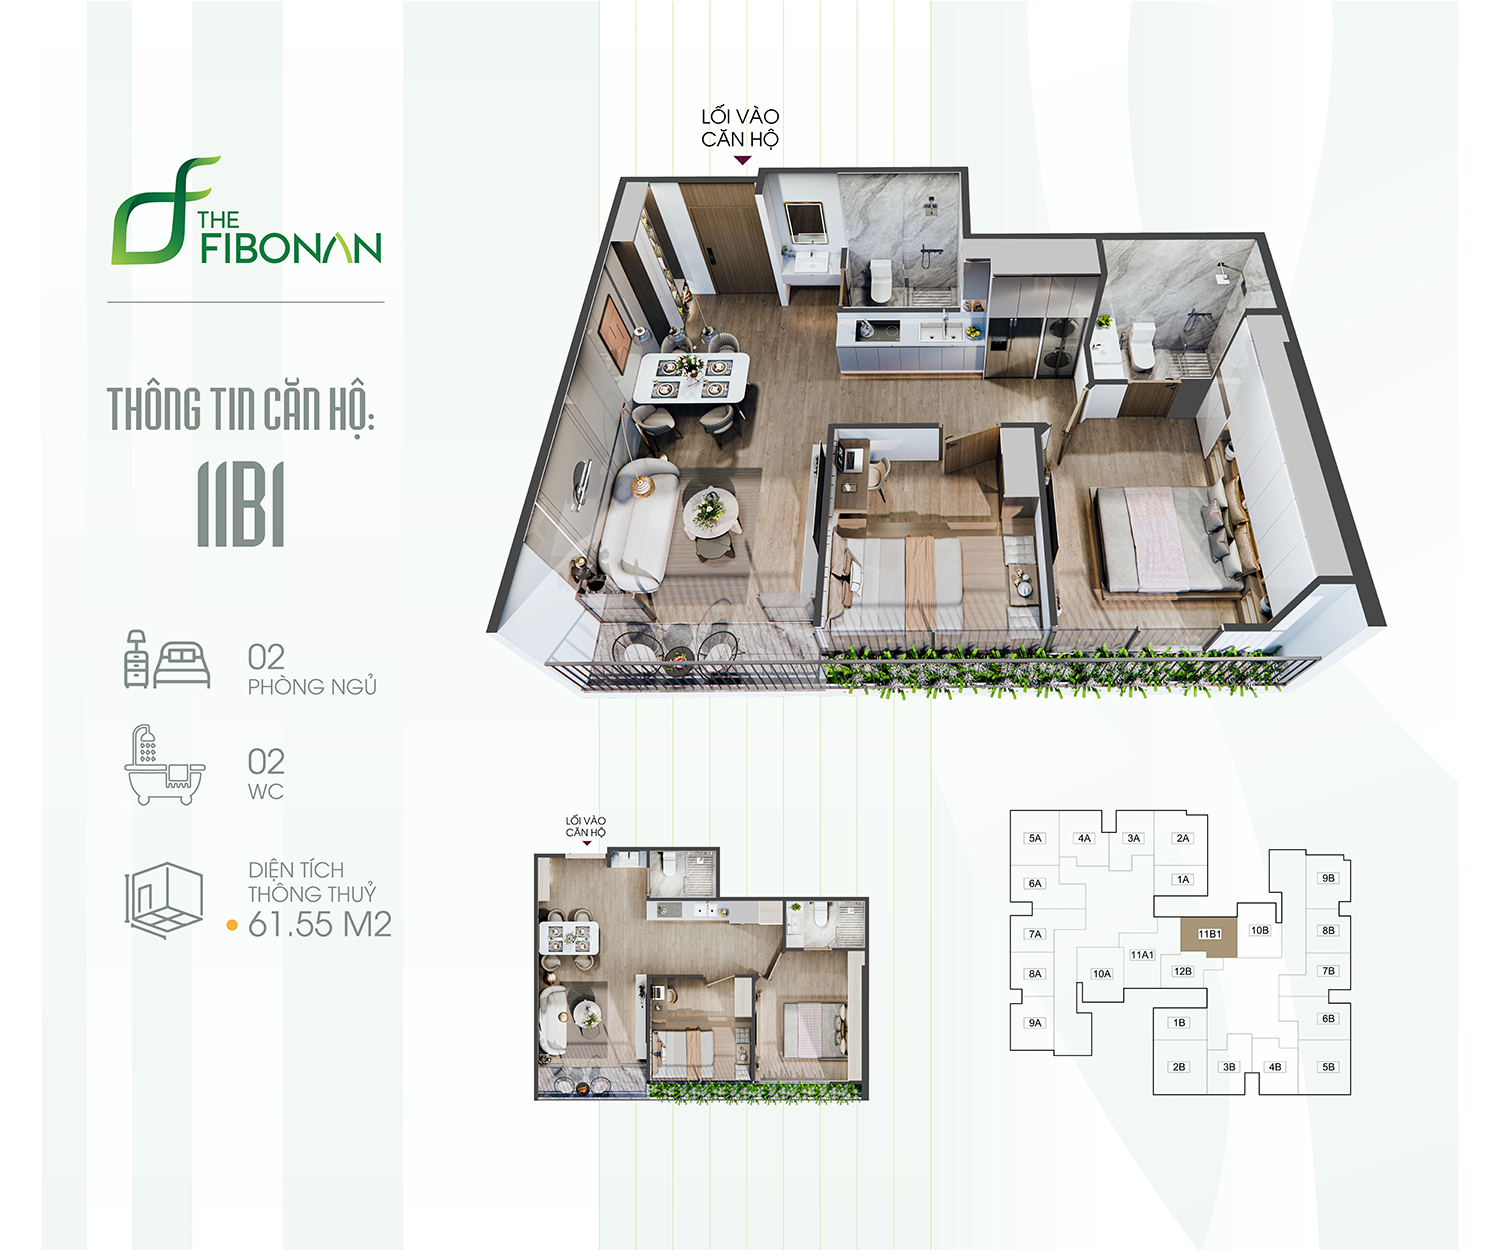 Thiết kế căn hộ The Fibonan với logia kéo dài từ phòng khách đến hết 2 phòng ngủ.